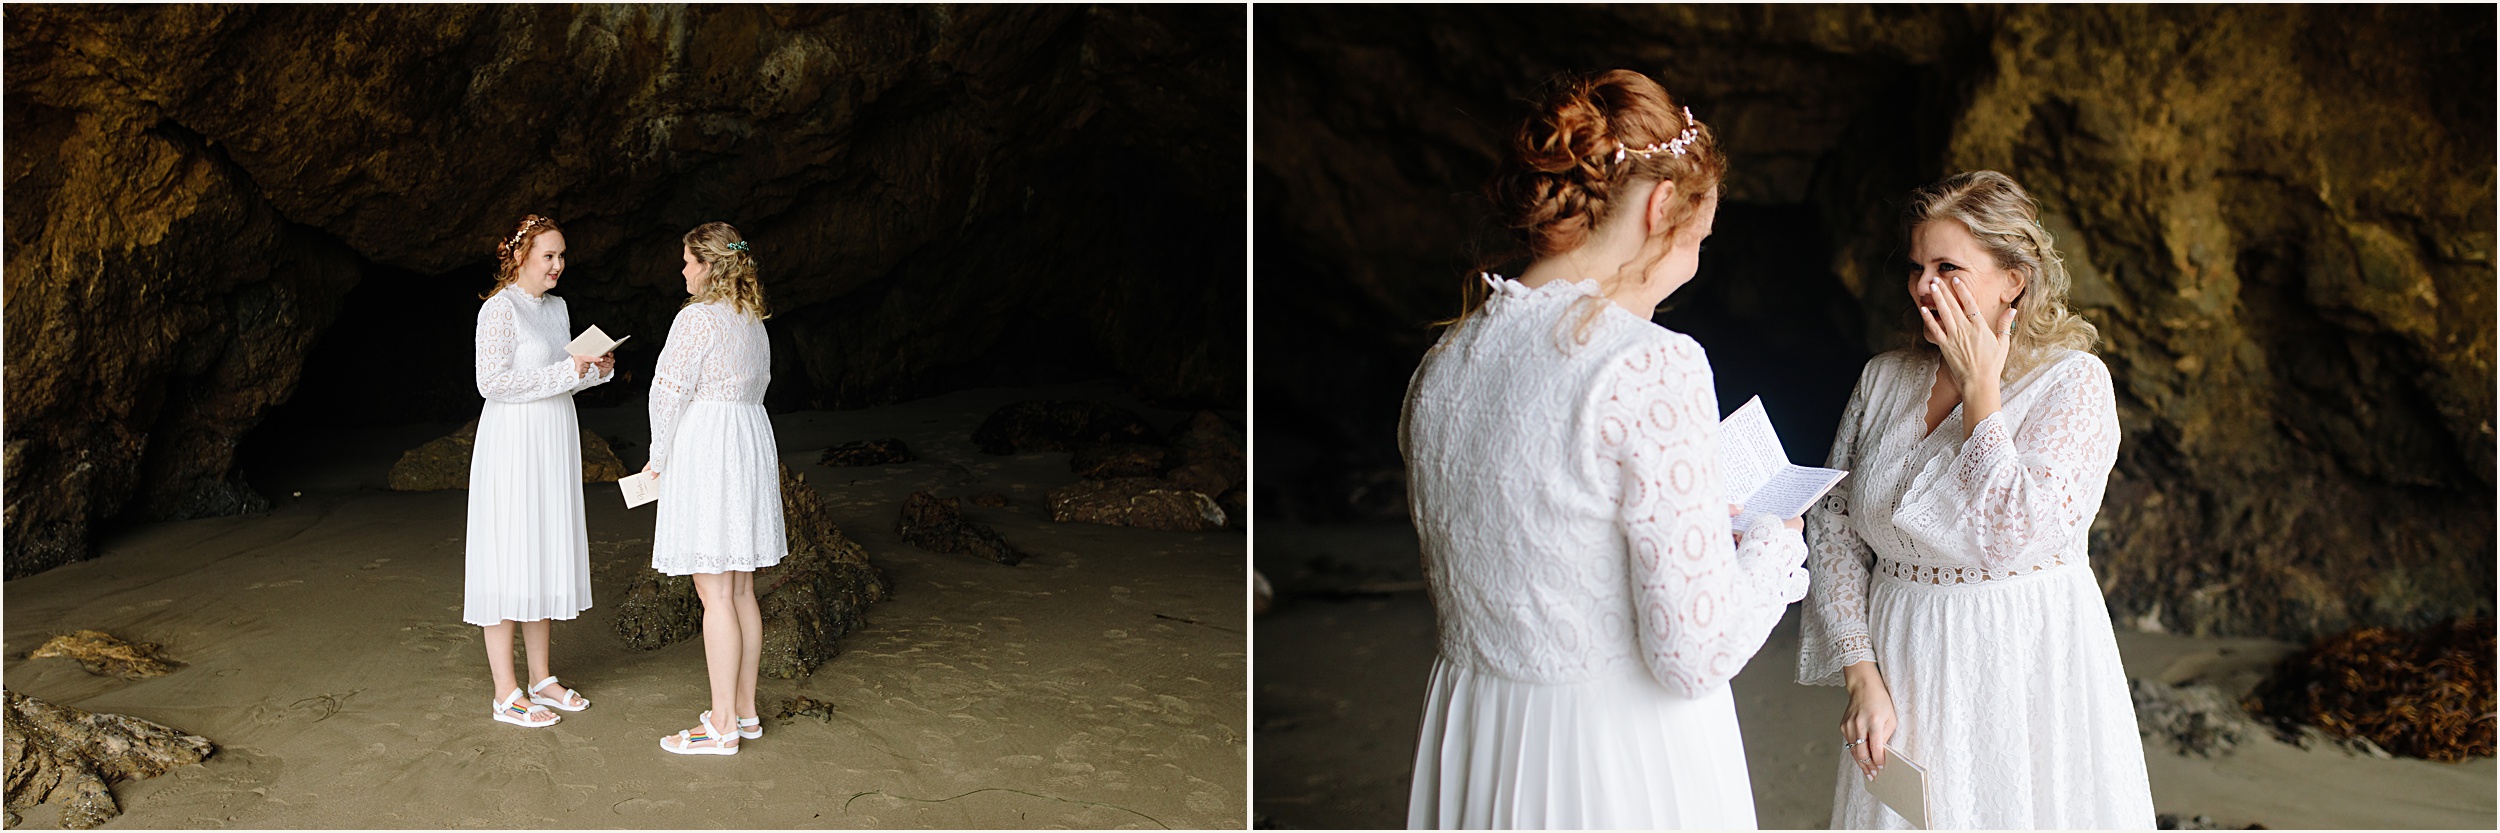 Photo of brides exchanging vows in El Matador beach cave